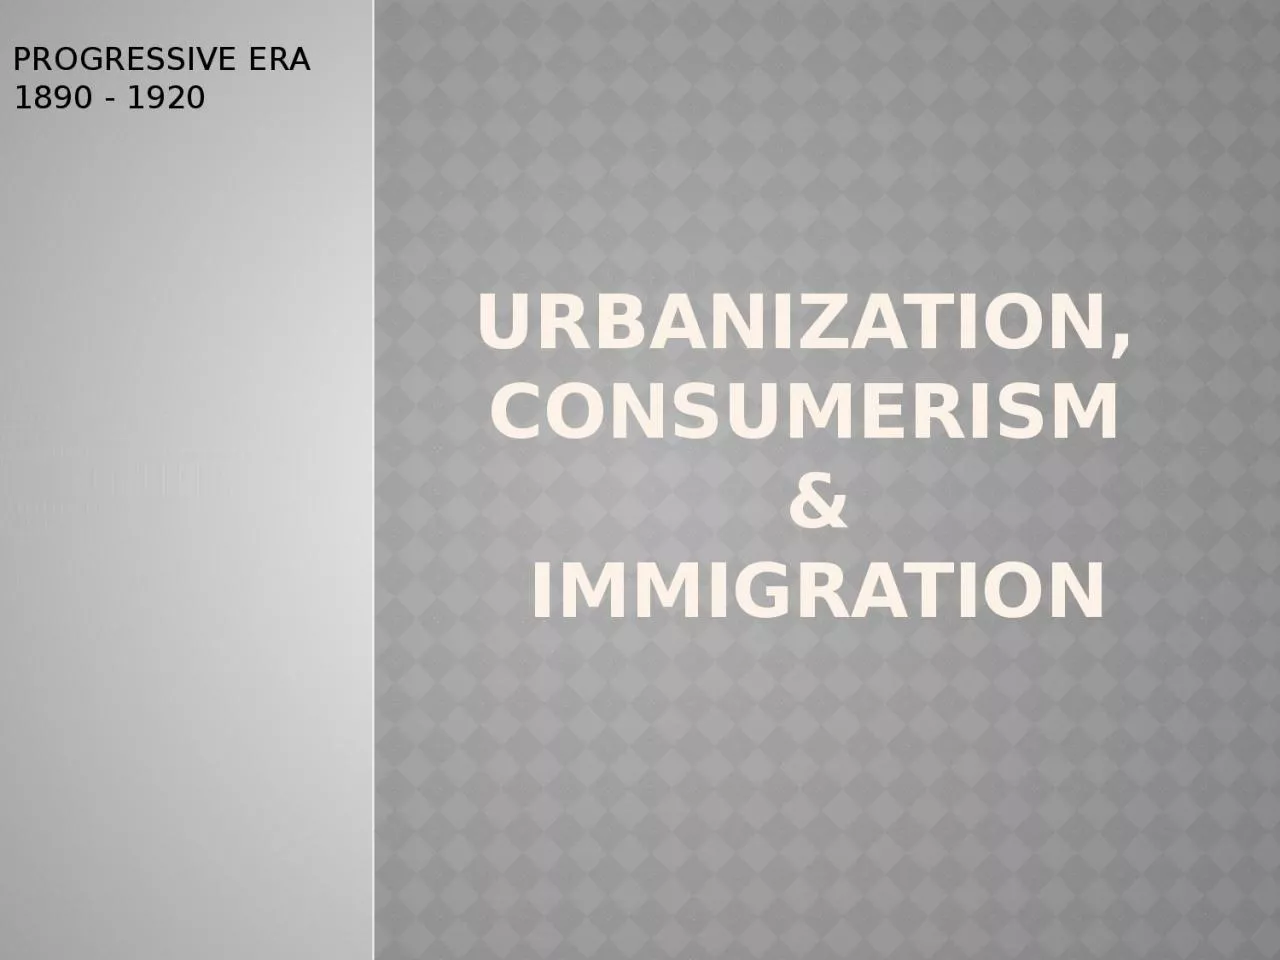 Urbanization, consumerism